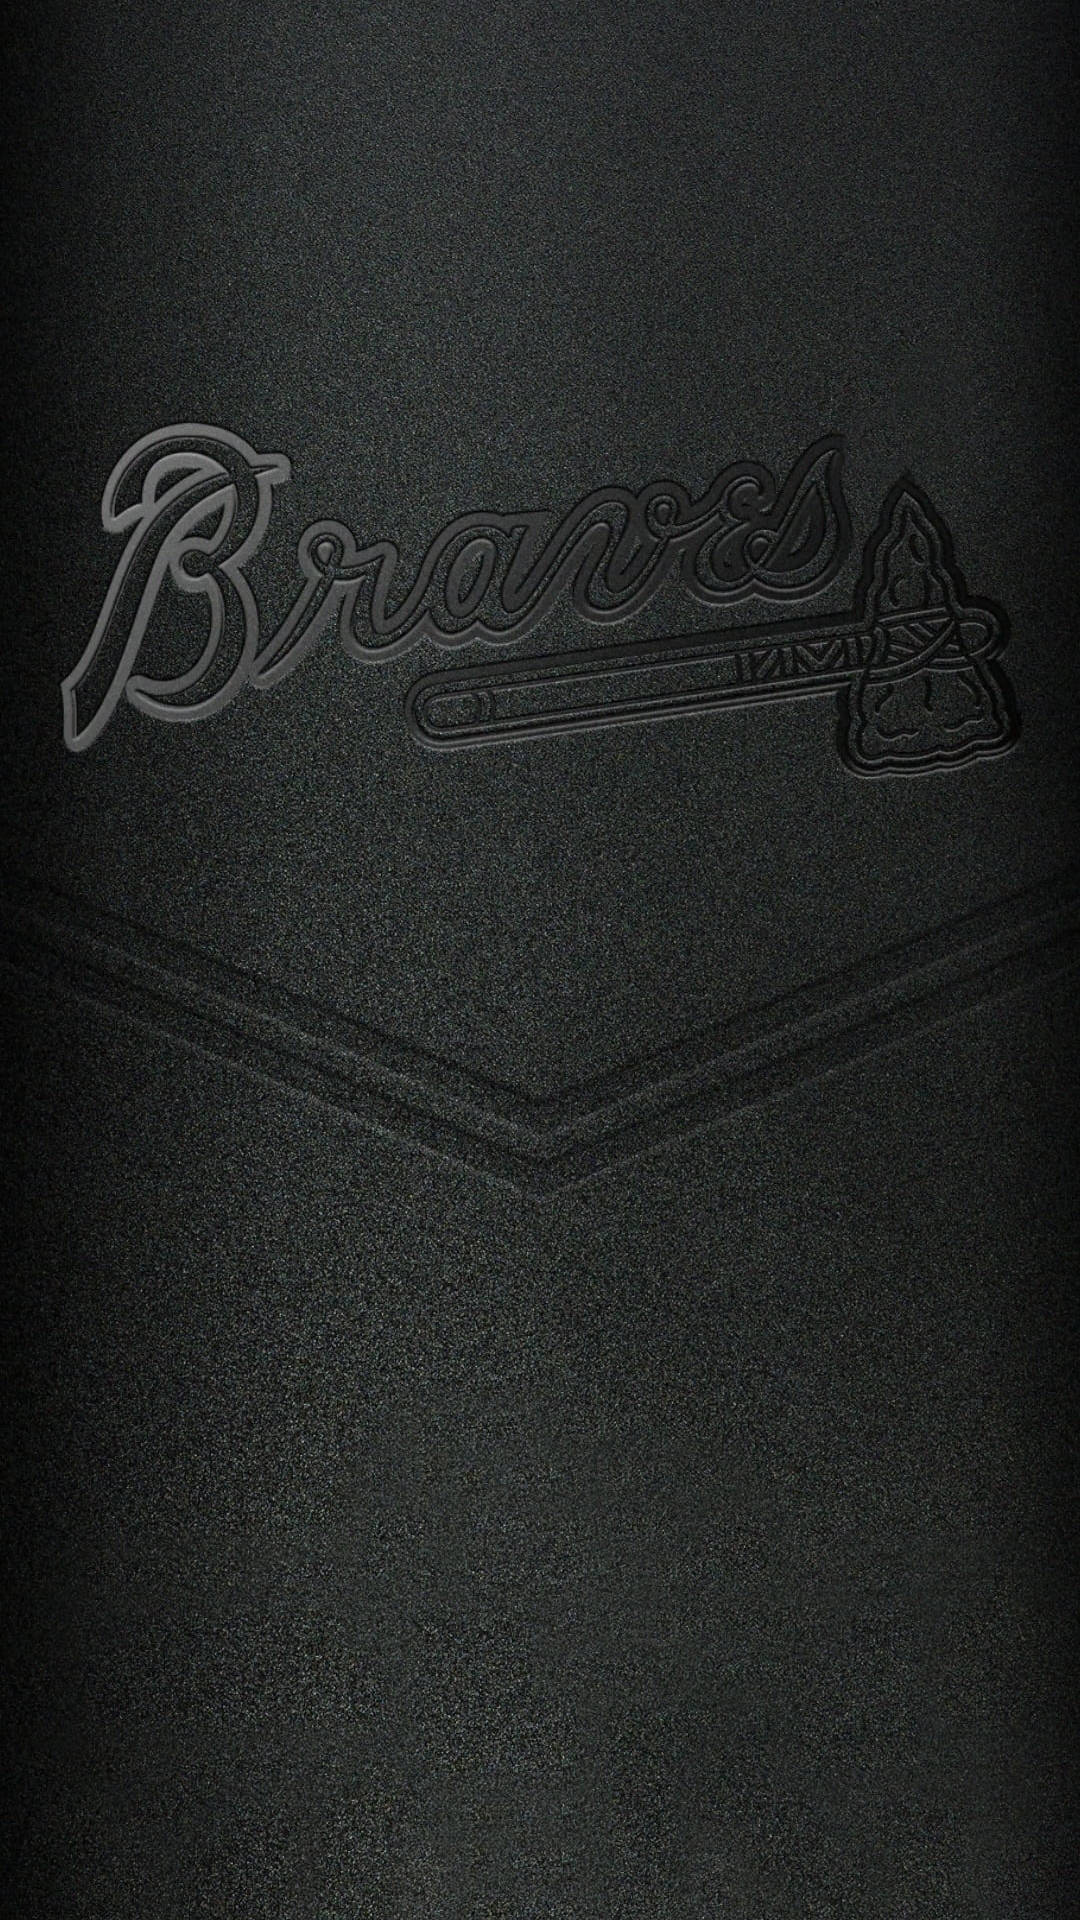 Wallpapergraverade Braves Iphone Baseball Bakgrundsbild. Wallpaper